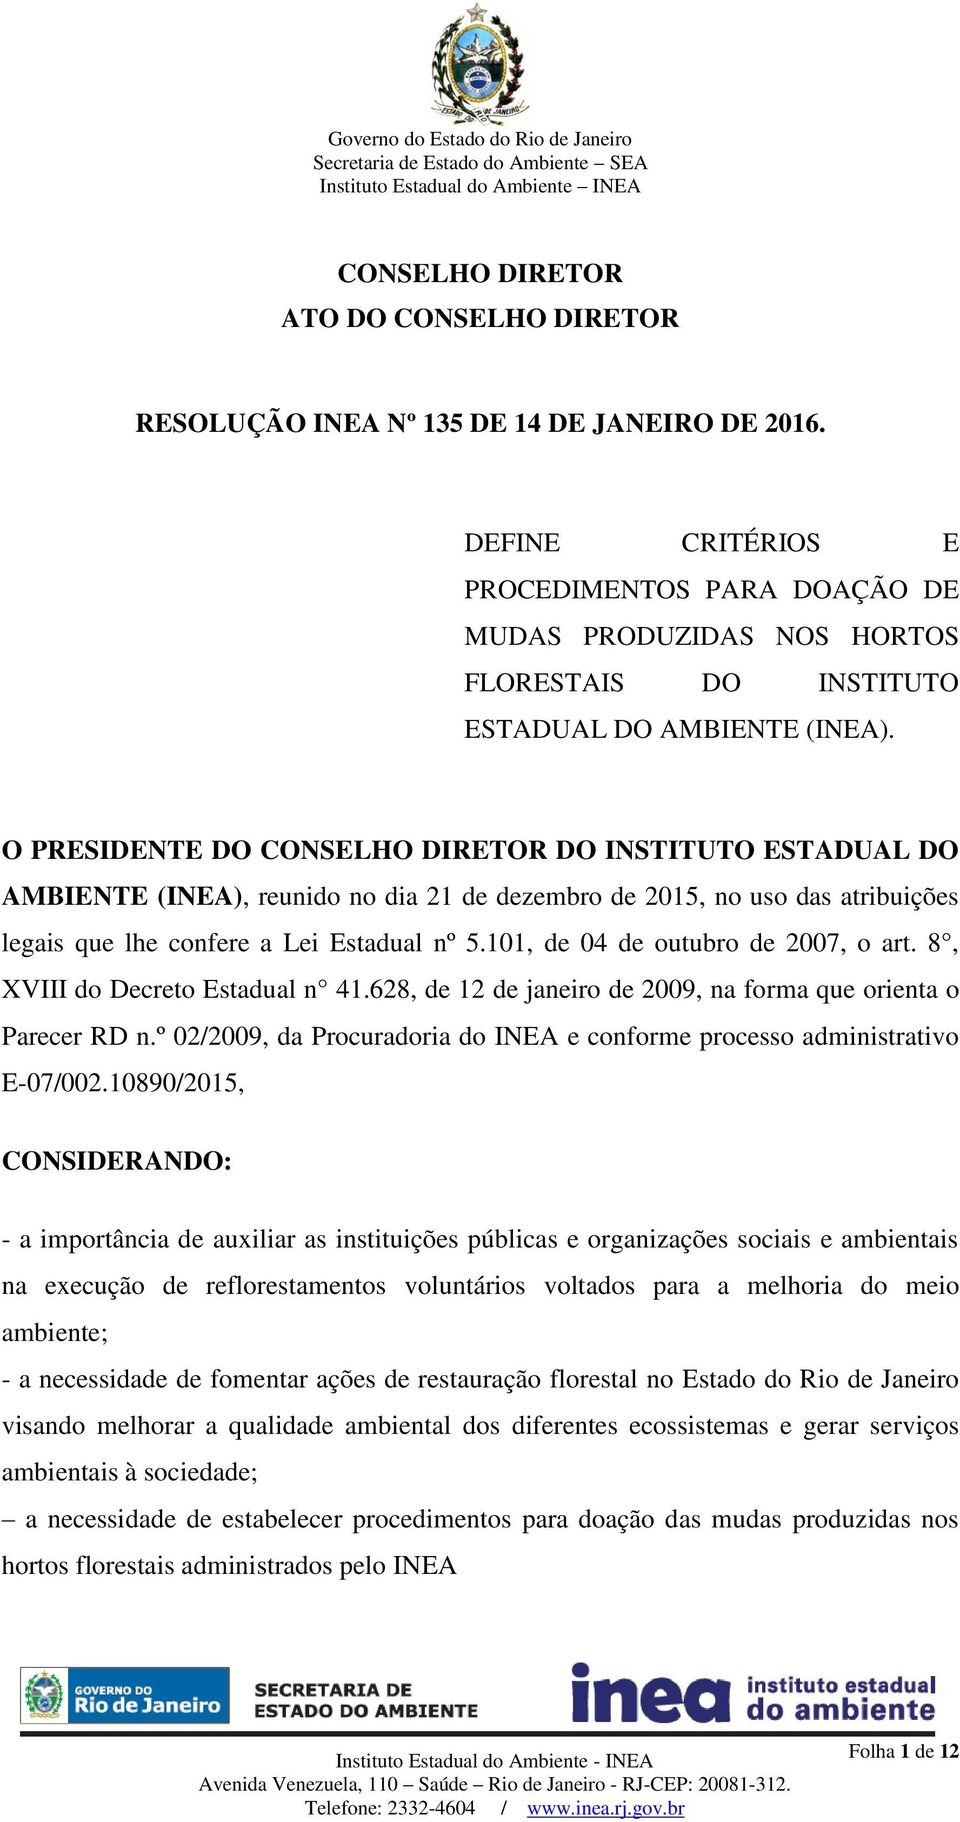 O PRESIDENTE DO CONSELHO DIRETOR DO INSTITUTO ESTADUAL DO AMBIENTE (INEA), reunido no dia 21 de dezembro de 2015, no uso das atribuições legais que lhe confere a Lei Estadual nº 5.